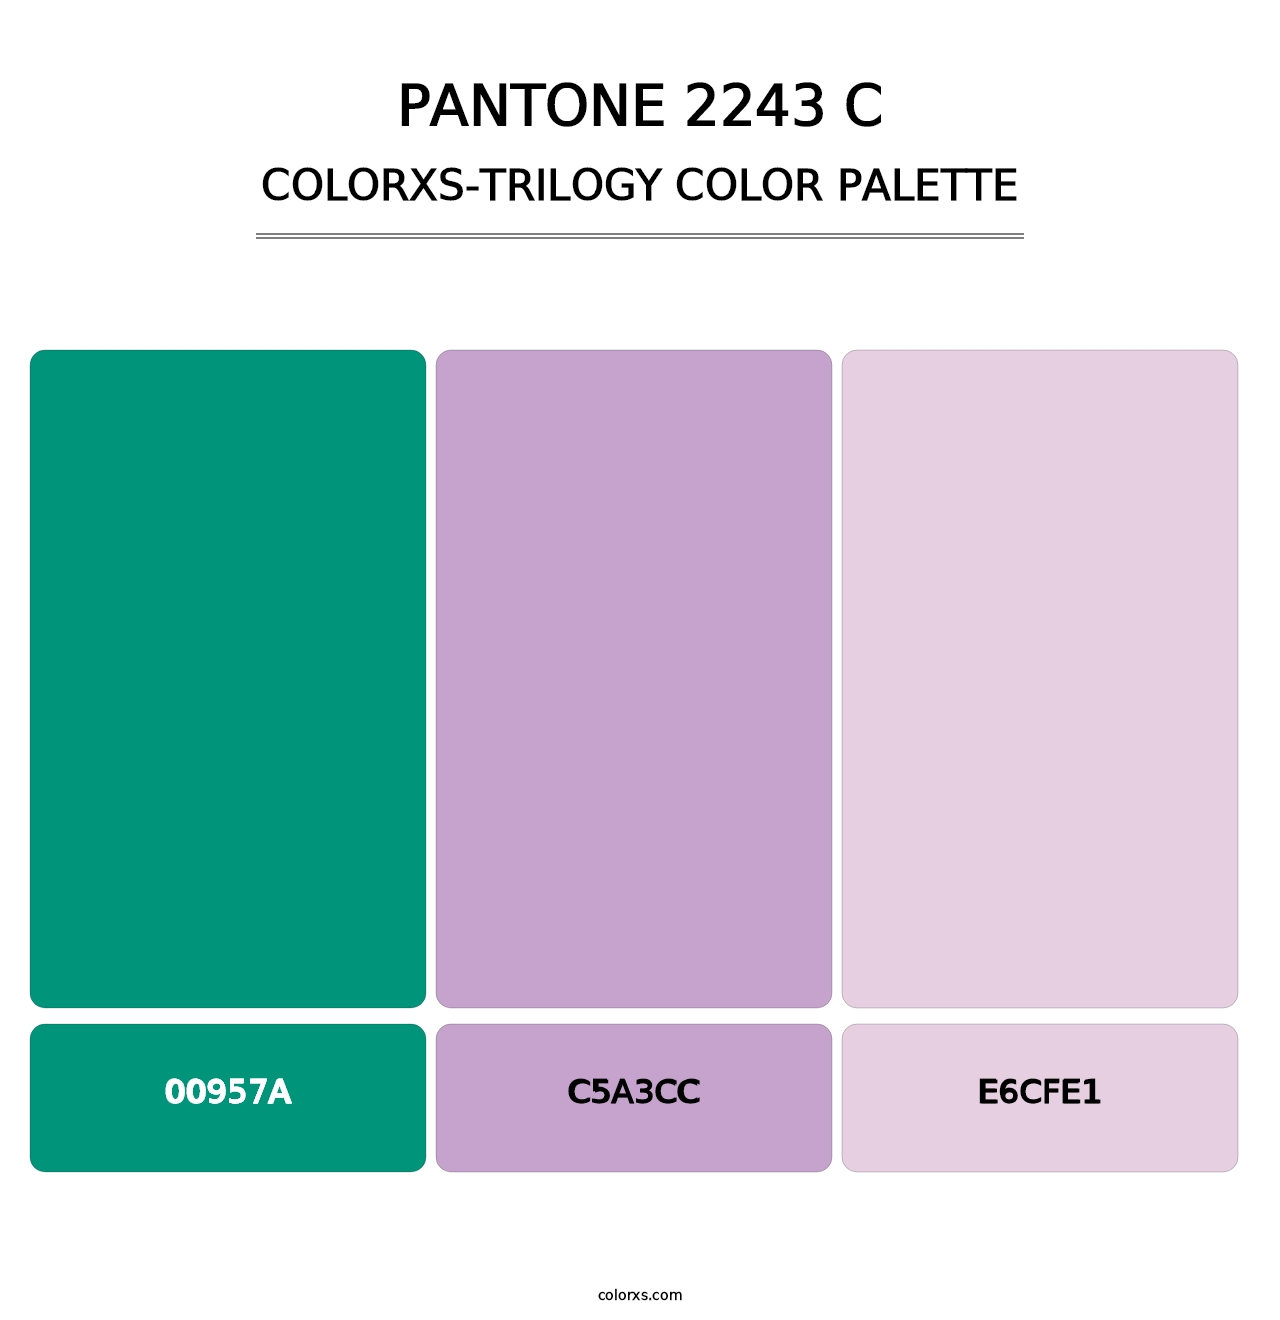 PANTONE 2243 C - Colorxs Trilogy Palette